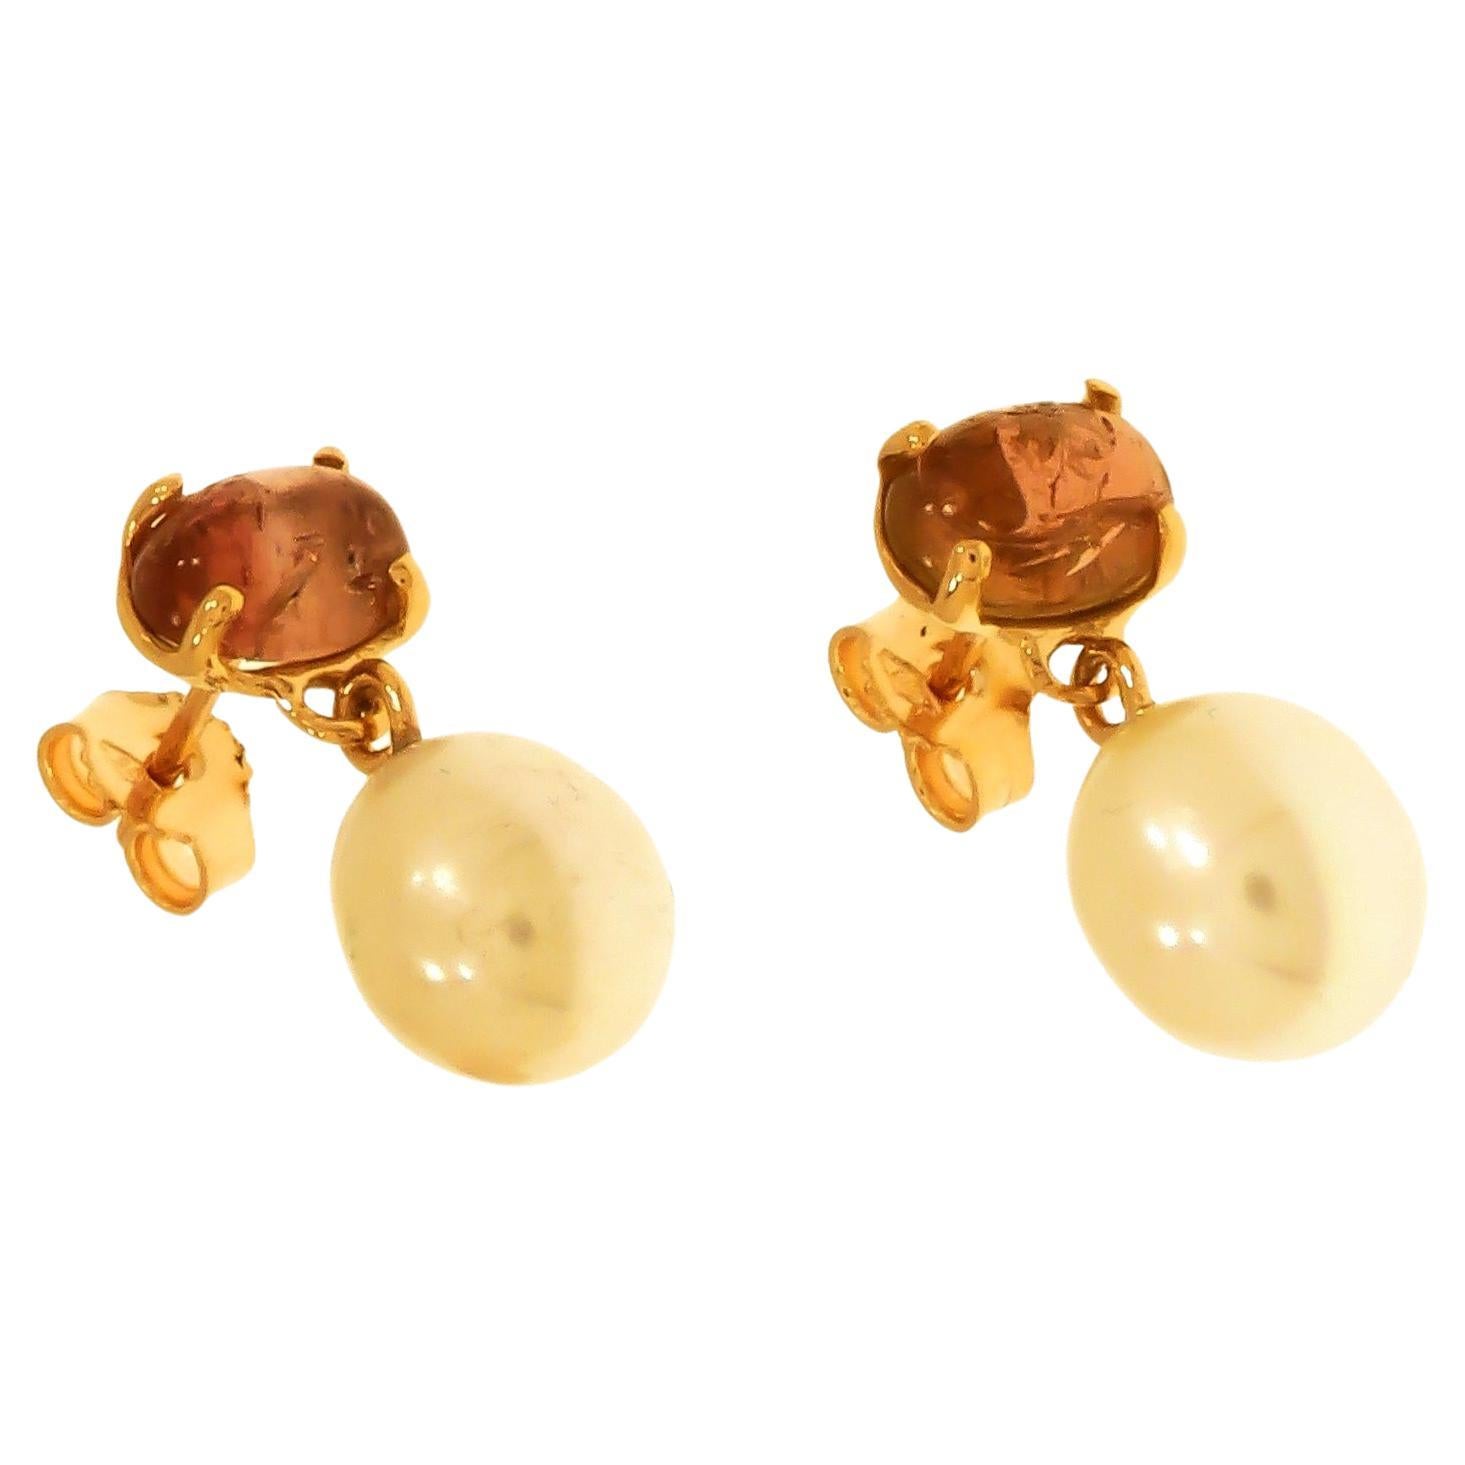 Clous d'oreilles en or rose 9 carats avec tourmaline rose et perles d'eau douce, fabriqués à la main